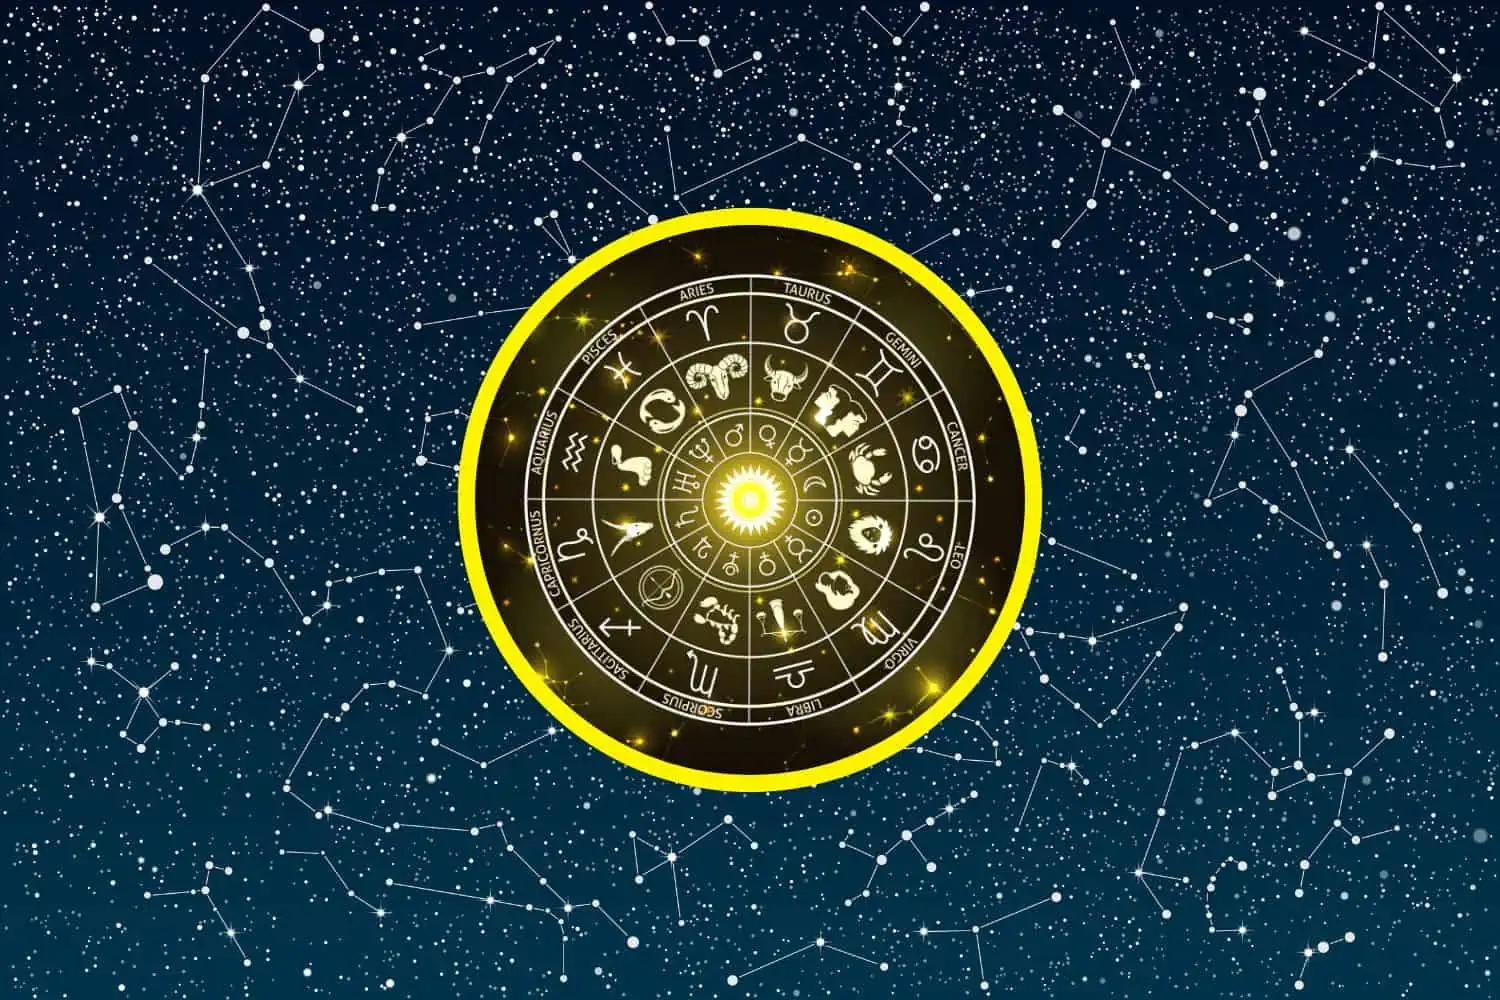 Today’s Free Horoscopes Wednesday 15 February 2023